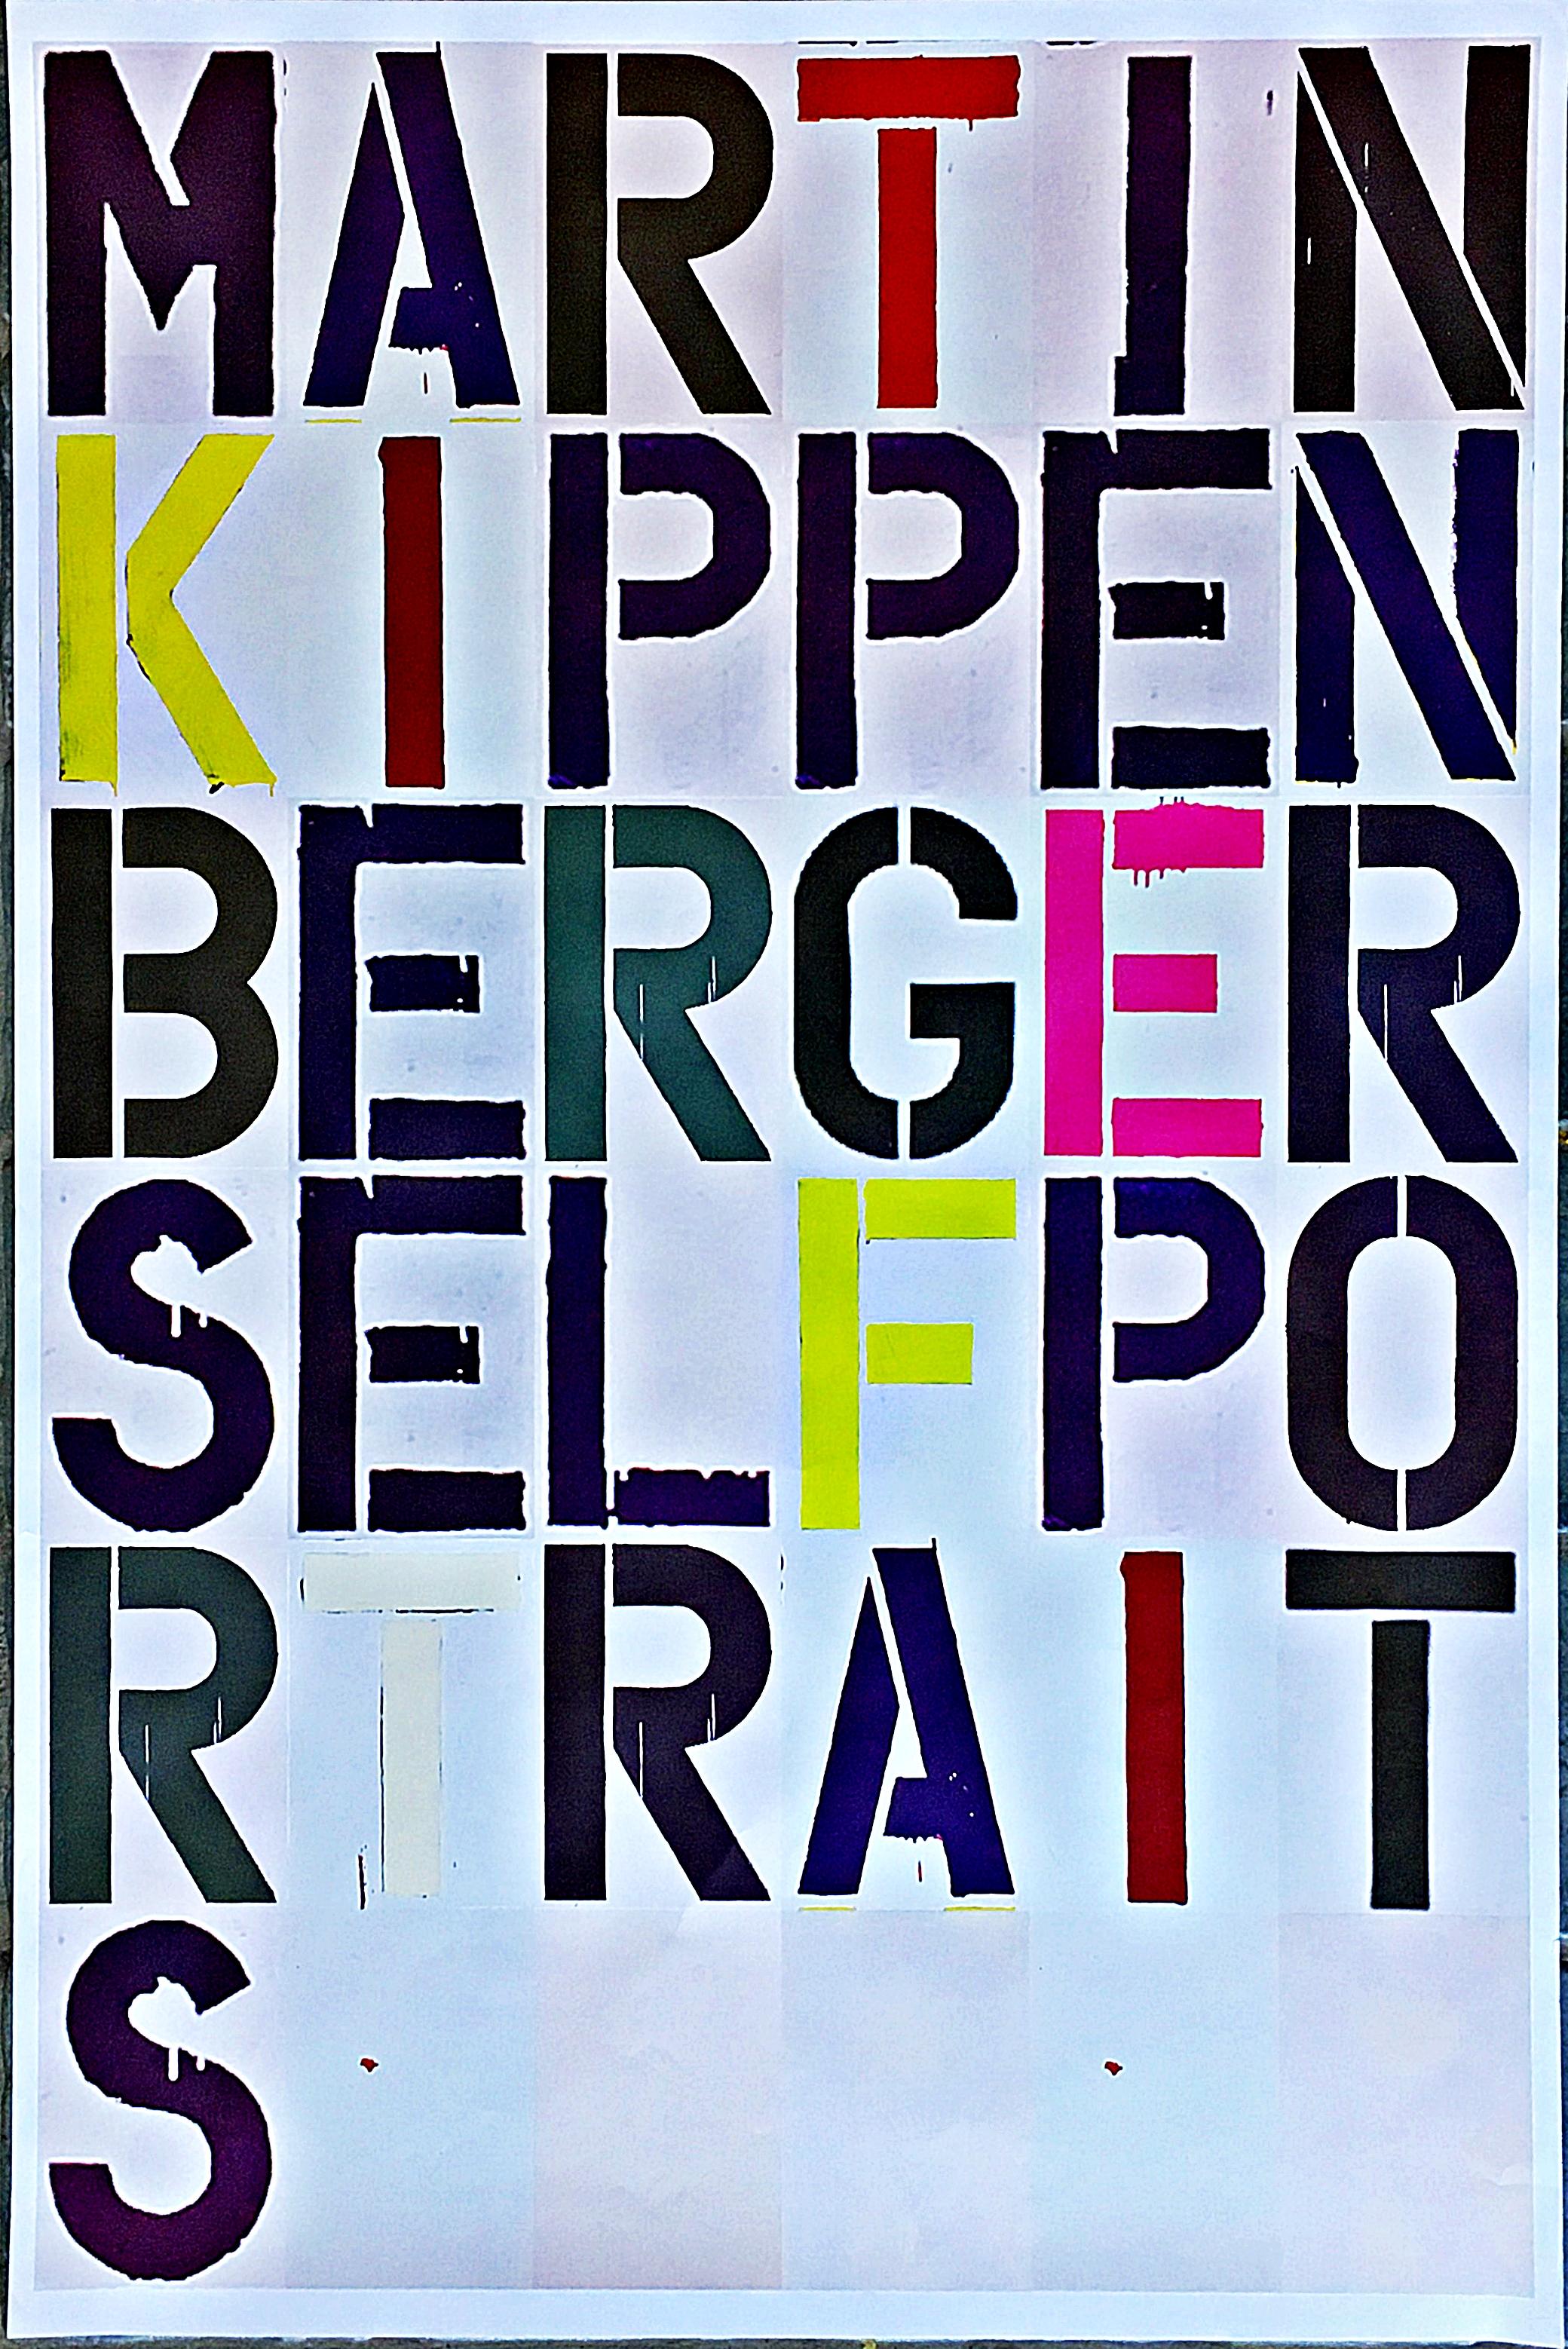 Martin Kippenberger Selbstporträts:  Minimalistisches Plakat, entworfen von Christopher Wool